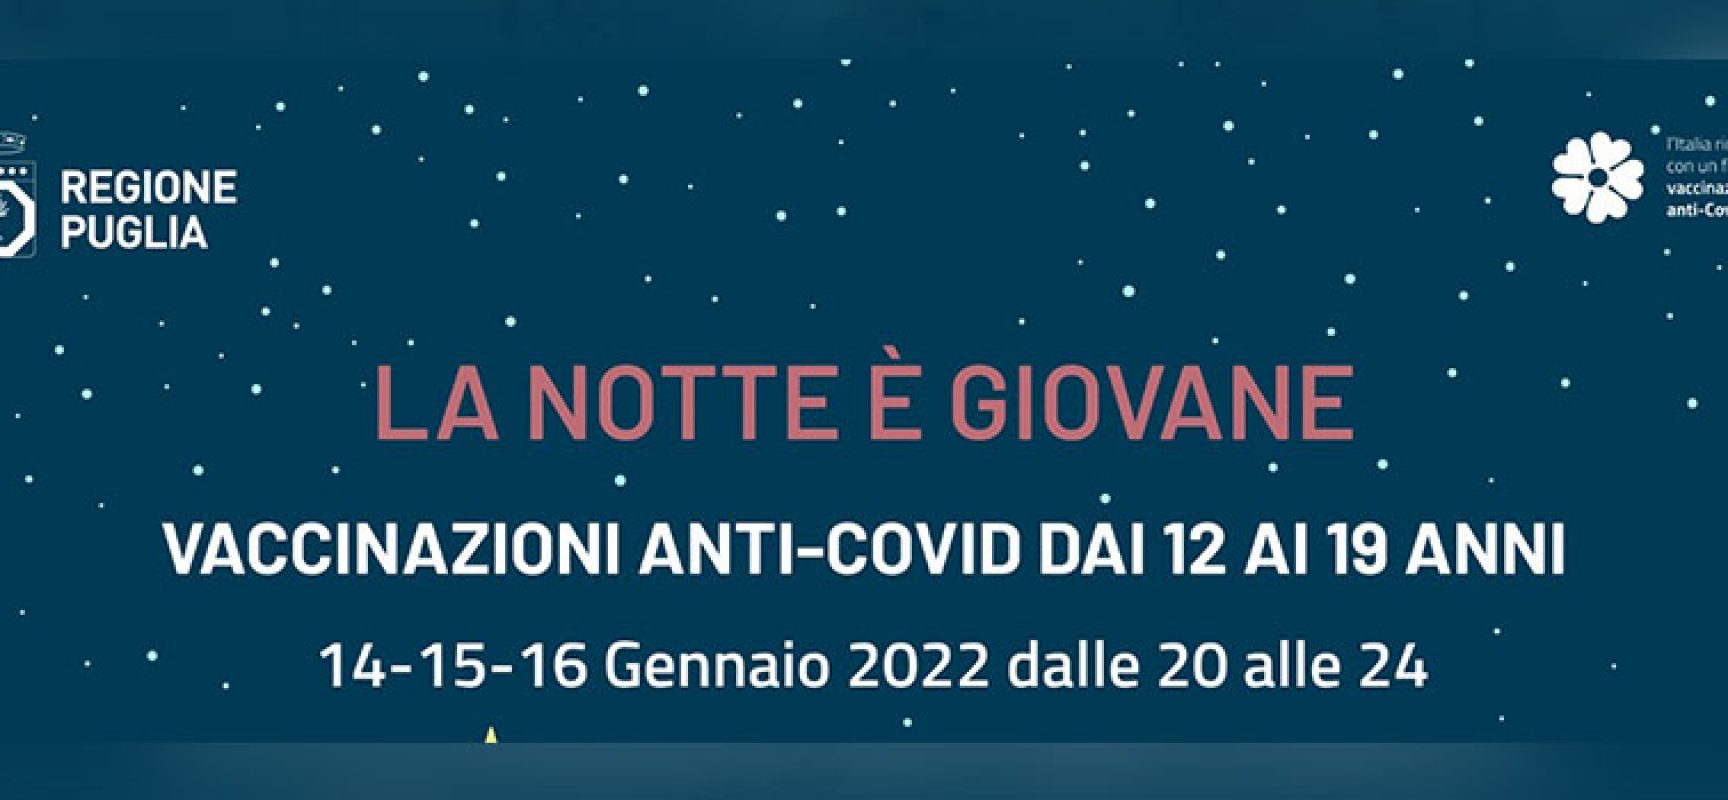 Regione Puglia promuove “La Notte è Giovane”, vaccinazioni dedicate a fascia 12-19 anni